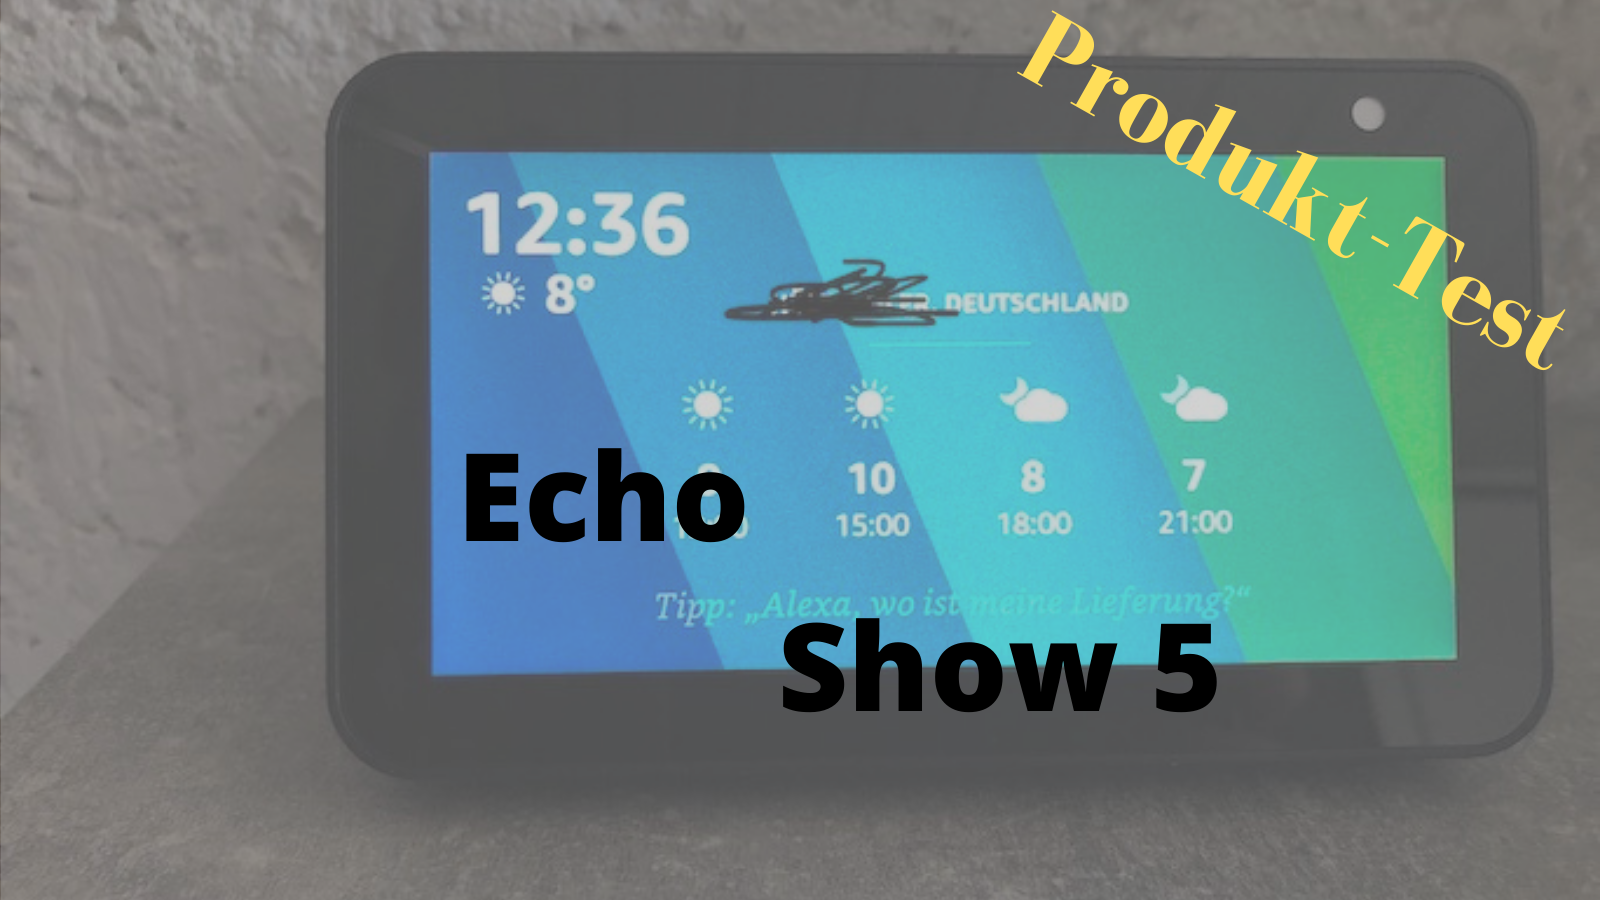 Der Echo Show 5